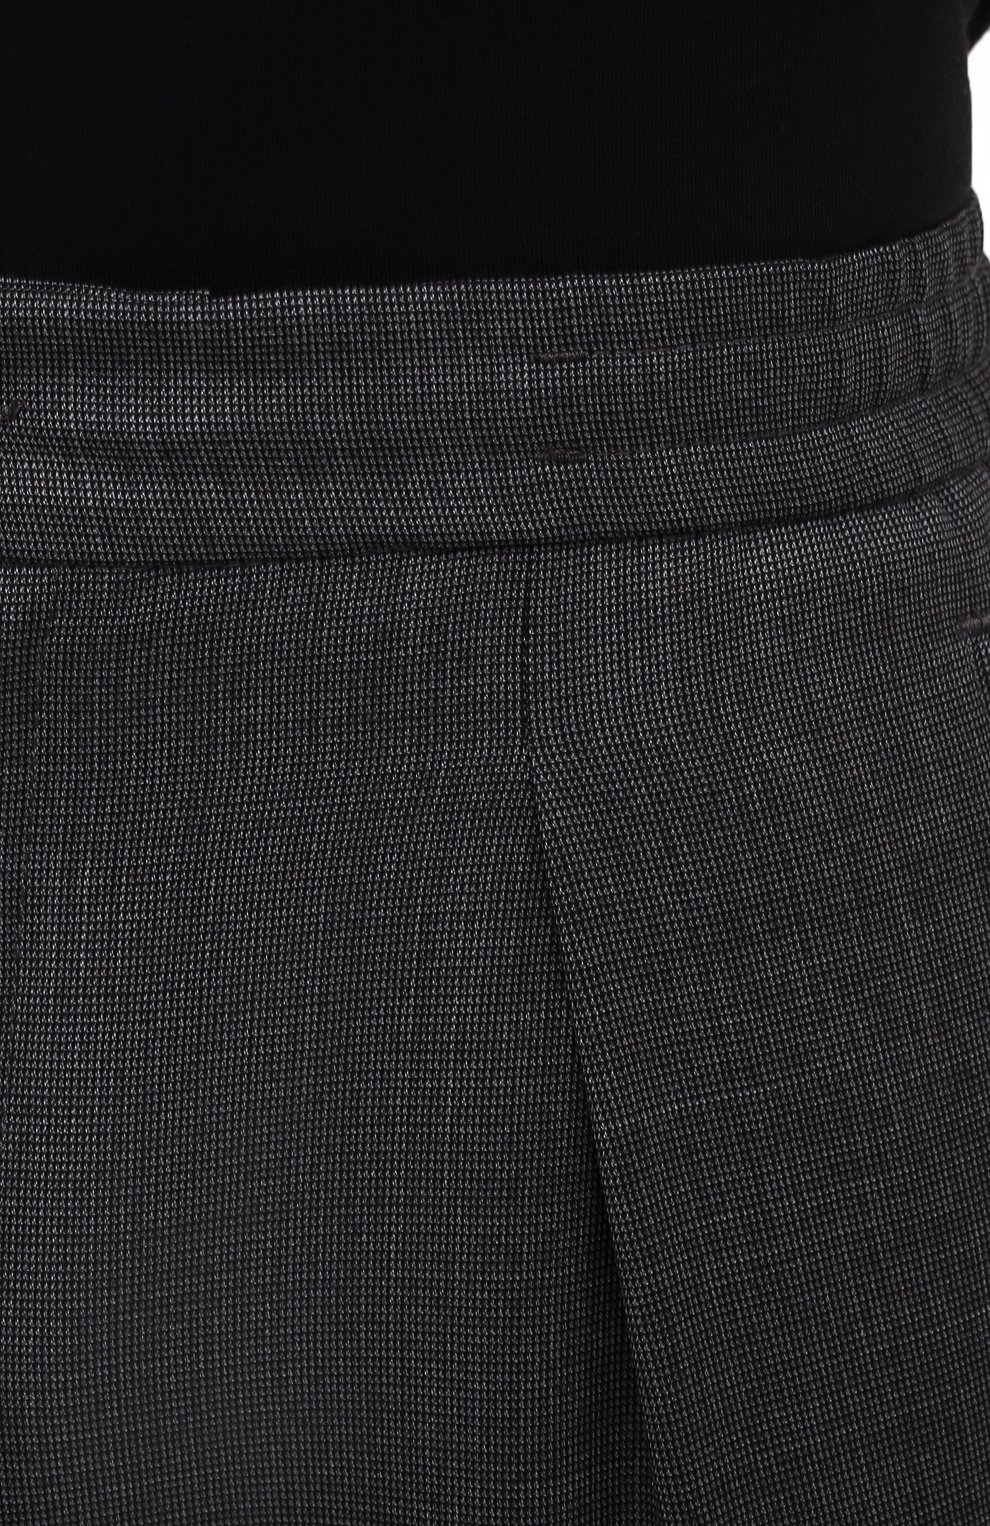 Мужские шерстяные брюки MARCO PESCAROLO темно-серого цвета, арт. CHIAIA/4231 | Фото 5 (Материал внешний: Шерсть; Длина (брюки, джинсы): Стандартные; Стили: Классический; Случай: Формальный)